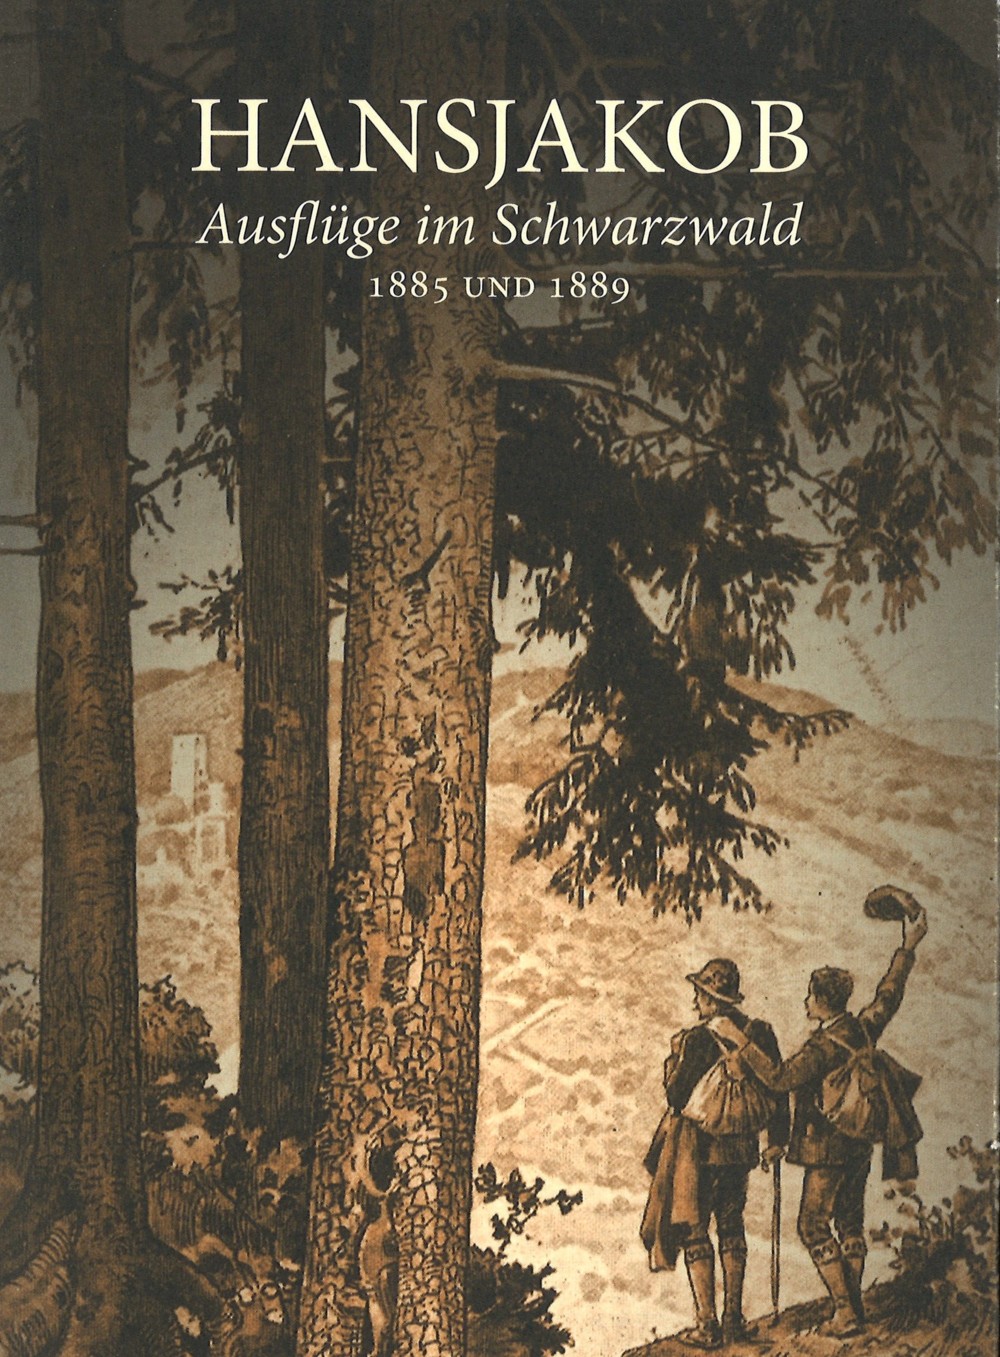 Buchtitel: Hansjakob Ausflüge im Schwarzwald